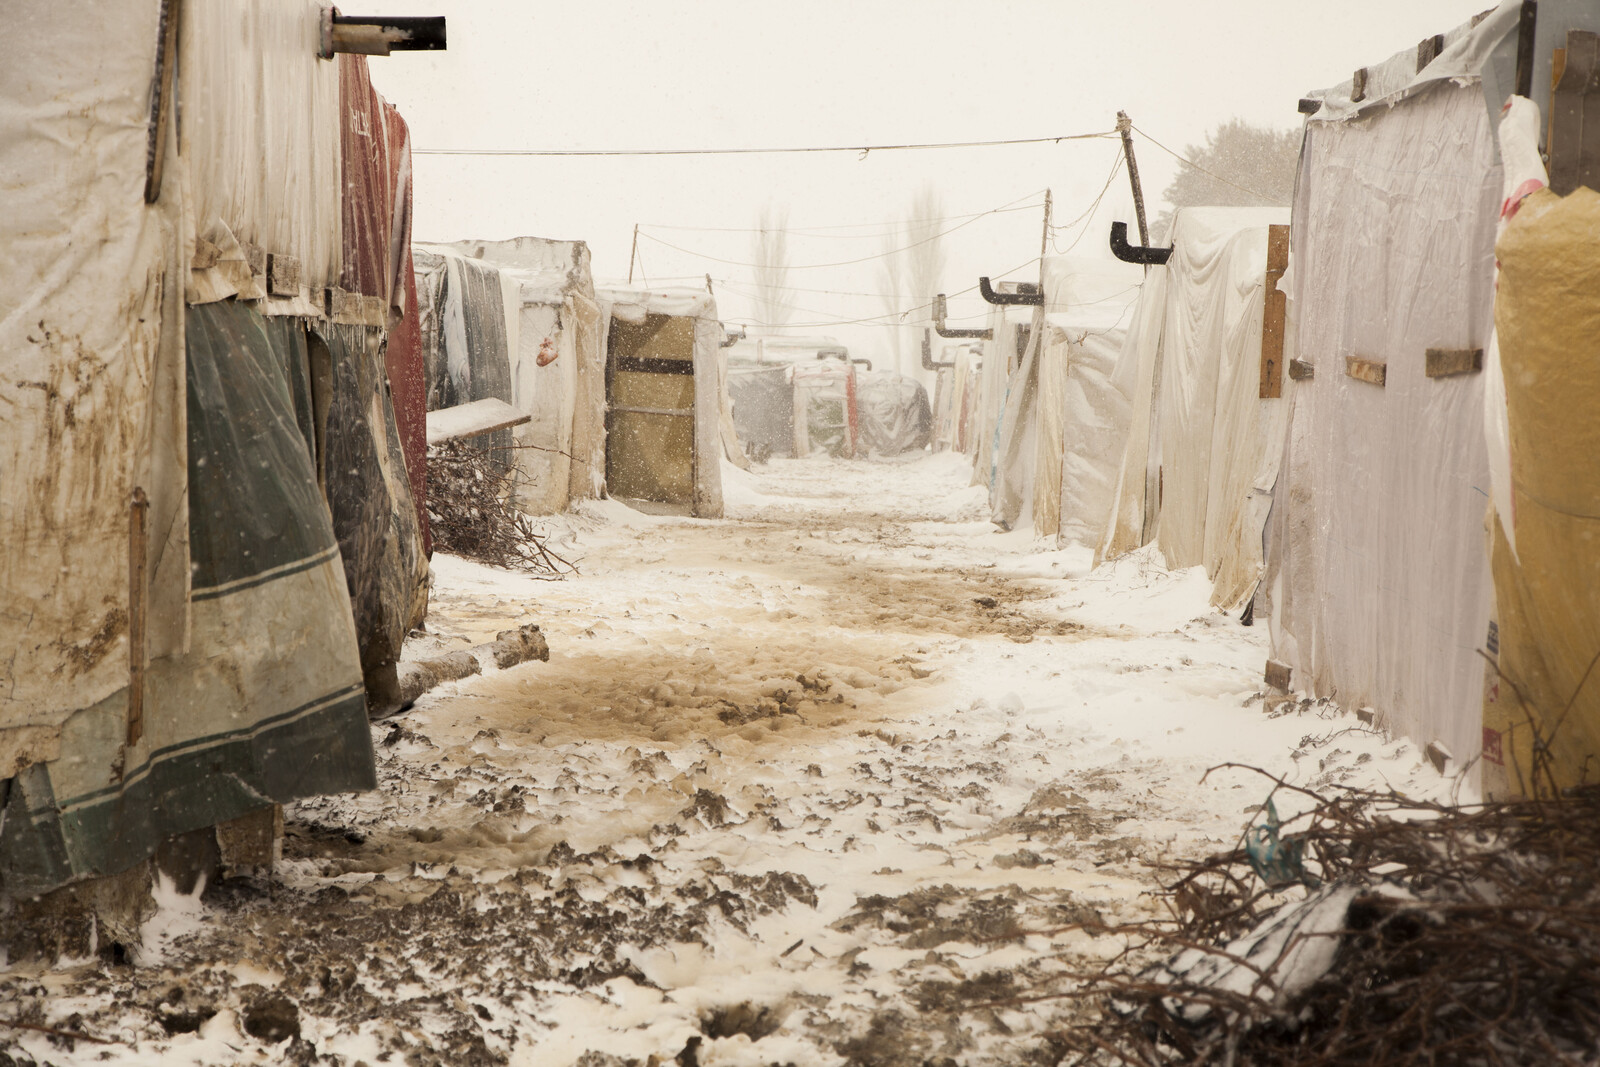 Schnee fällt in einem Flüchtlingslager im Irak. Der Winter ist lebensbedrohlich für die Flüchtlinge.